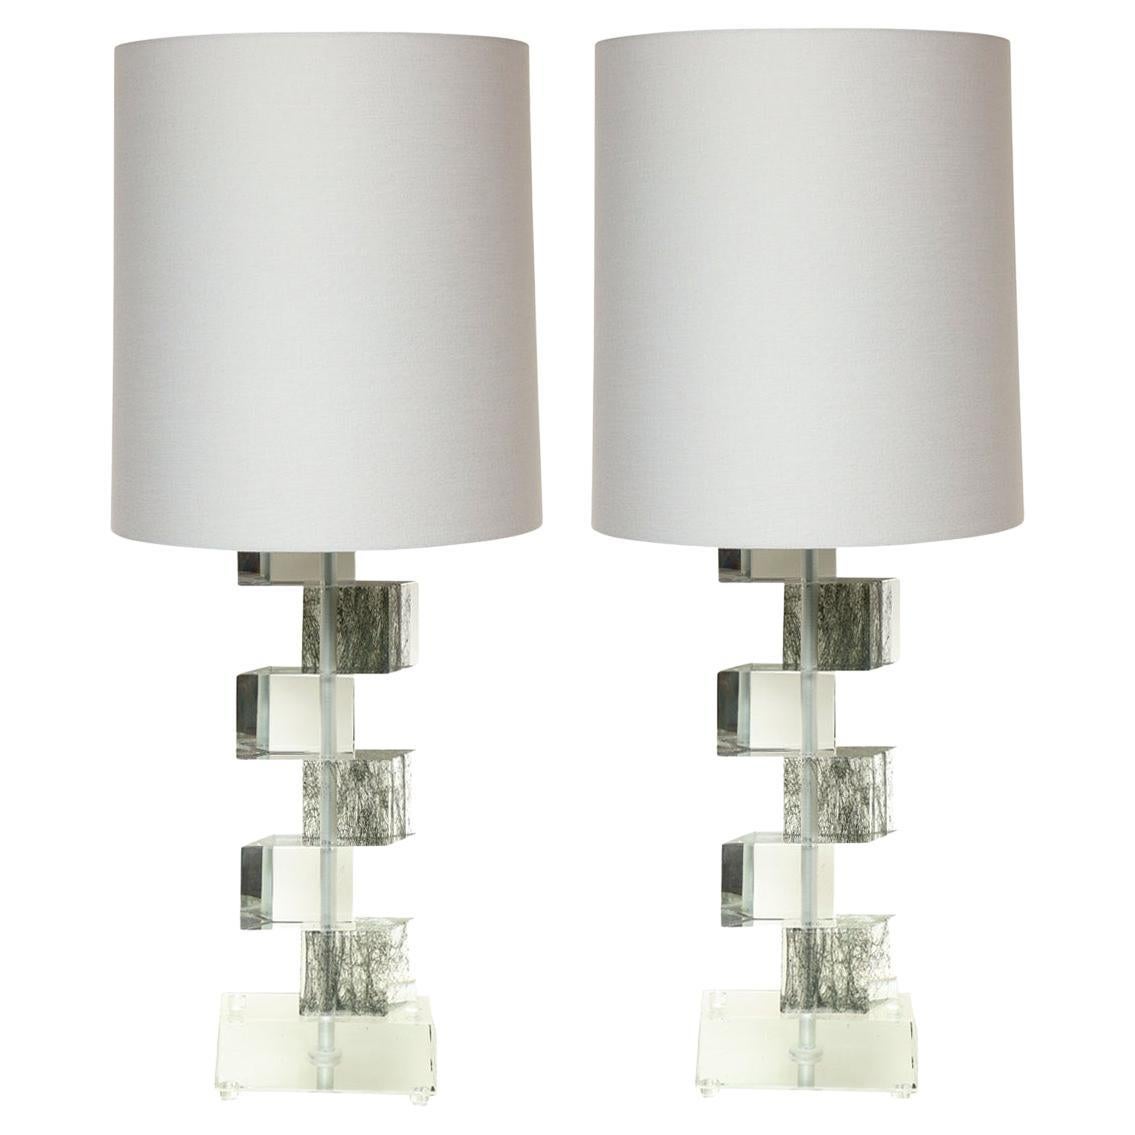 Artisan Pair of Murano Glass Block Table Lamps 2022